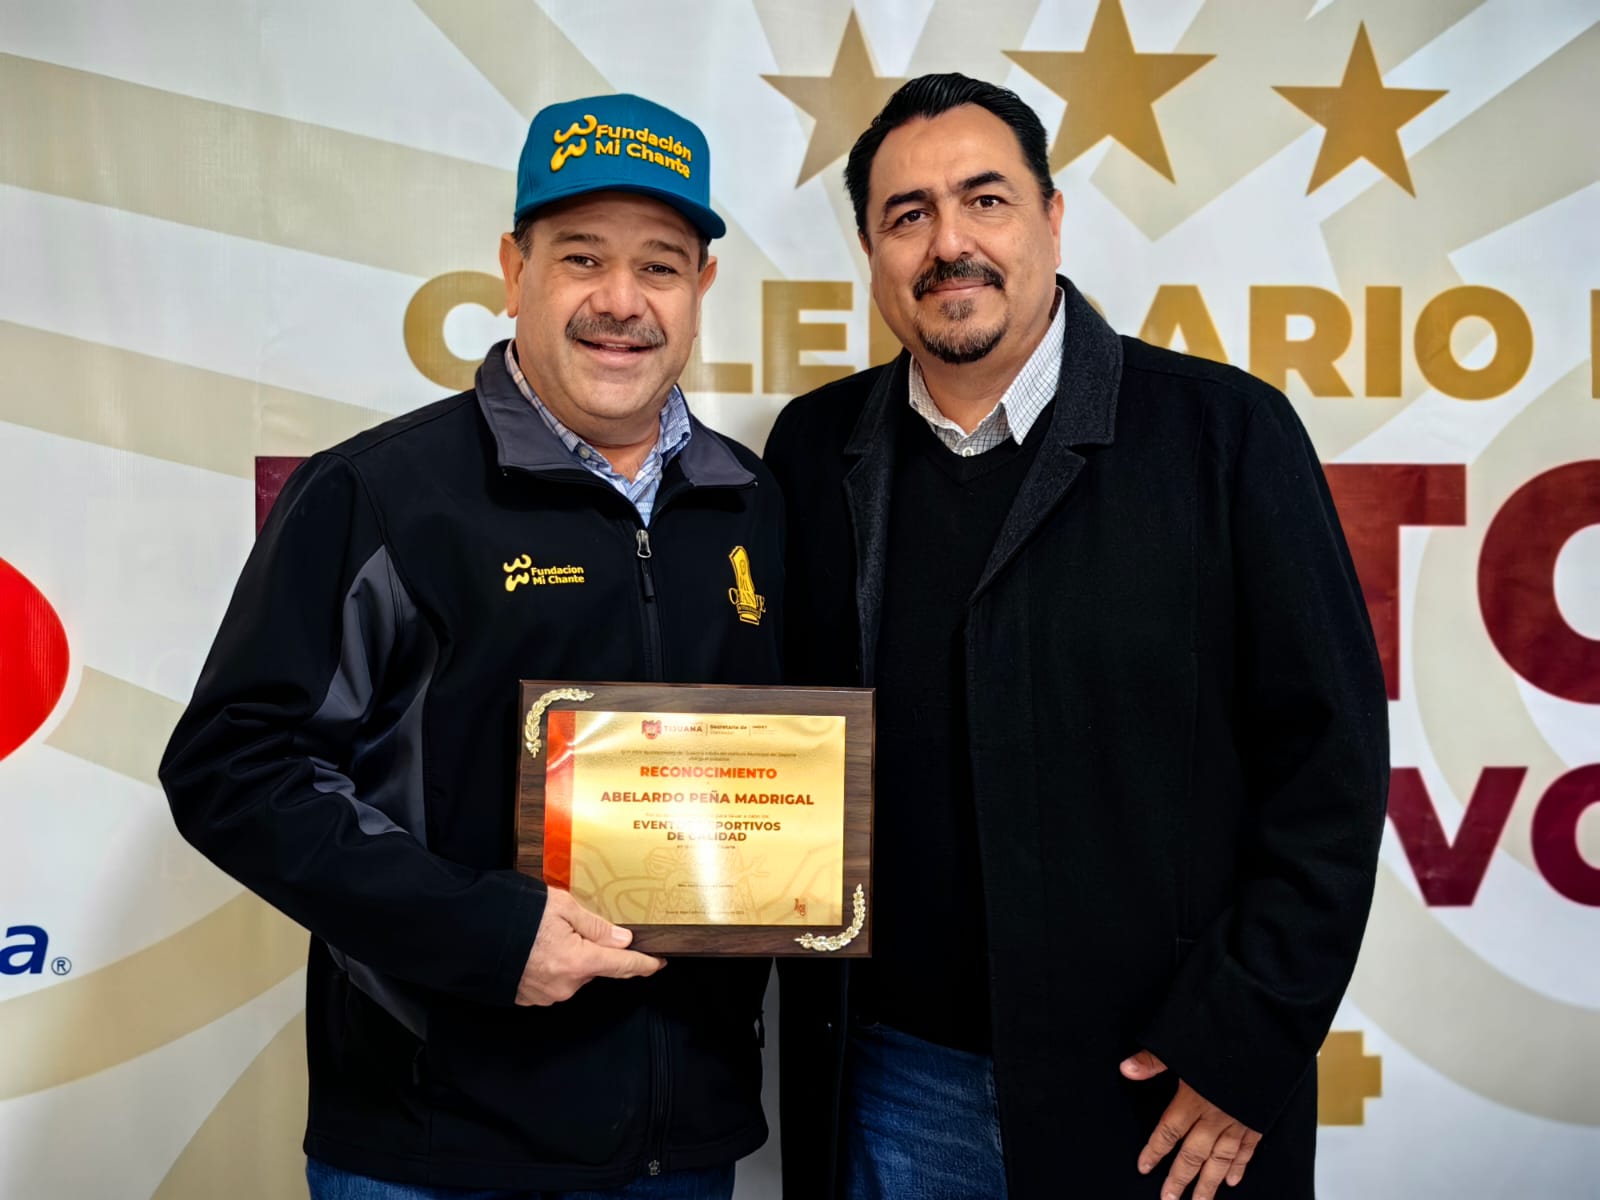 Recibe reconocimiento Abelardo Peña Madrigal de parte del Ayuntamiento de Tijuana